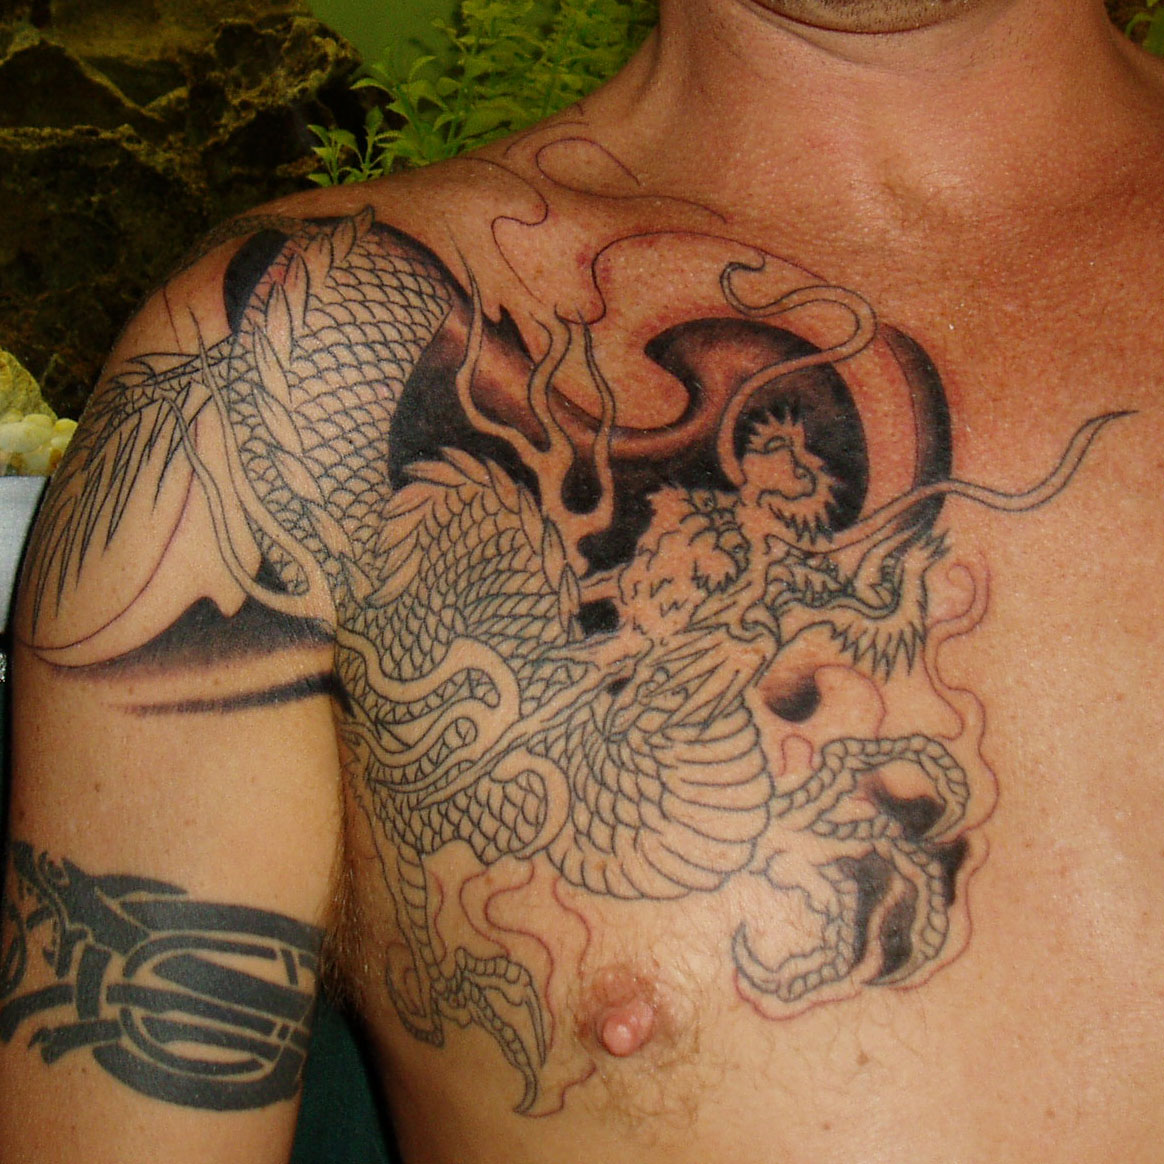 http://4.bp.blogspot.com/_dXE63lwcSrk/TIAKYGkpr1I/AAAAAAAAC4A/RURijUL26Ts/s1600/Asian_Dragon_Tattoo.jpg